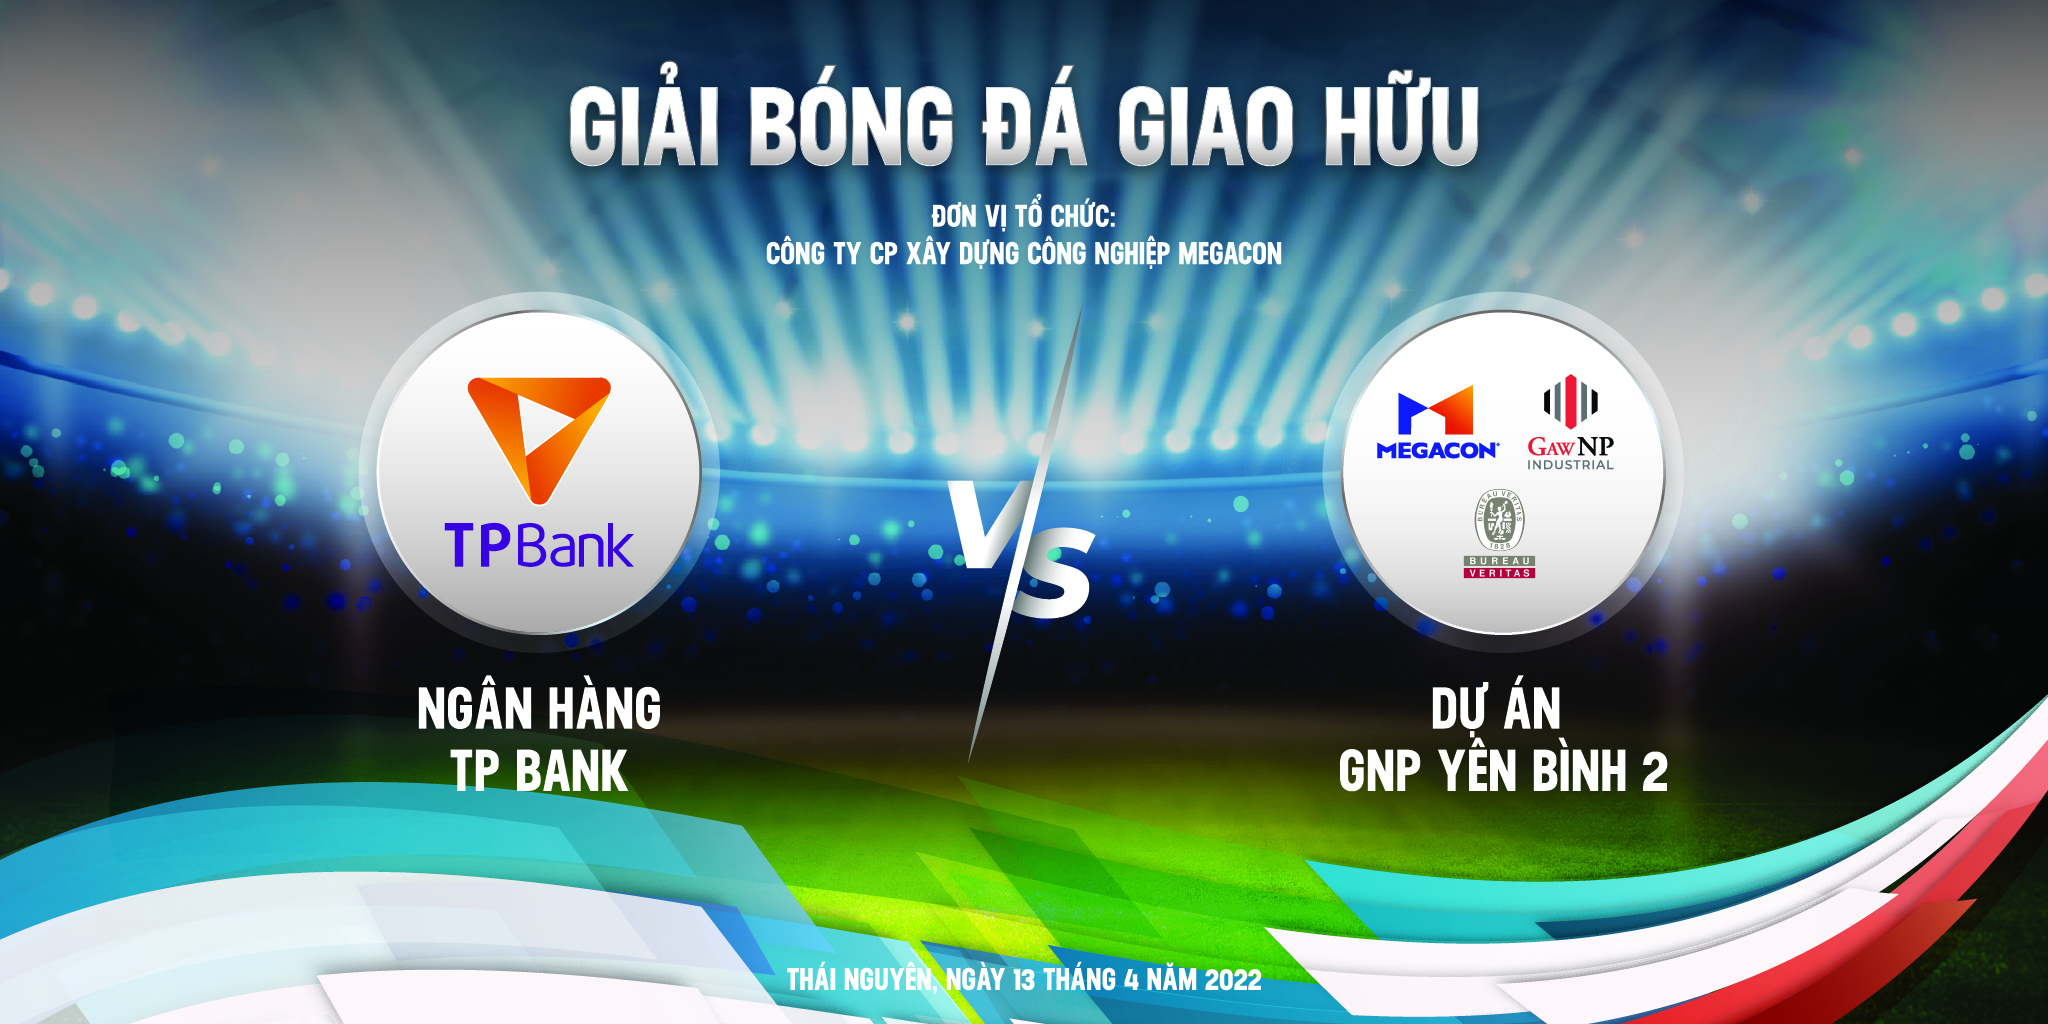 Giao hữu bóng đá giữa Dự Án GNP YB2 và Ngân hàng Tiên Phong 